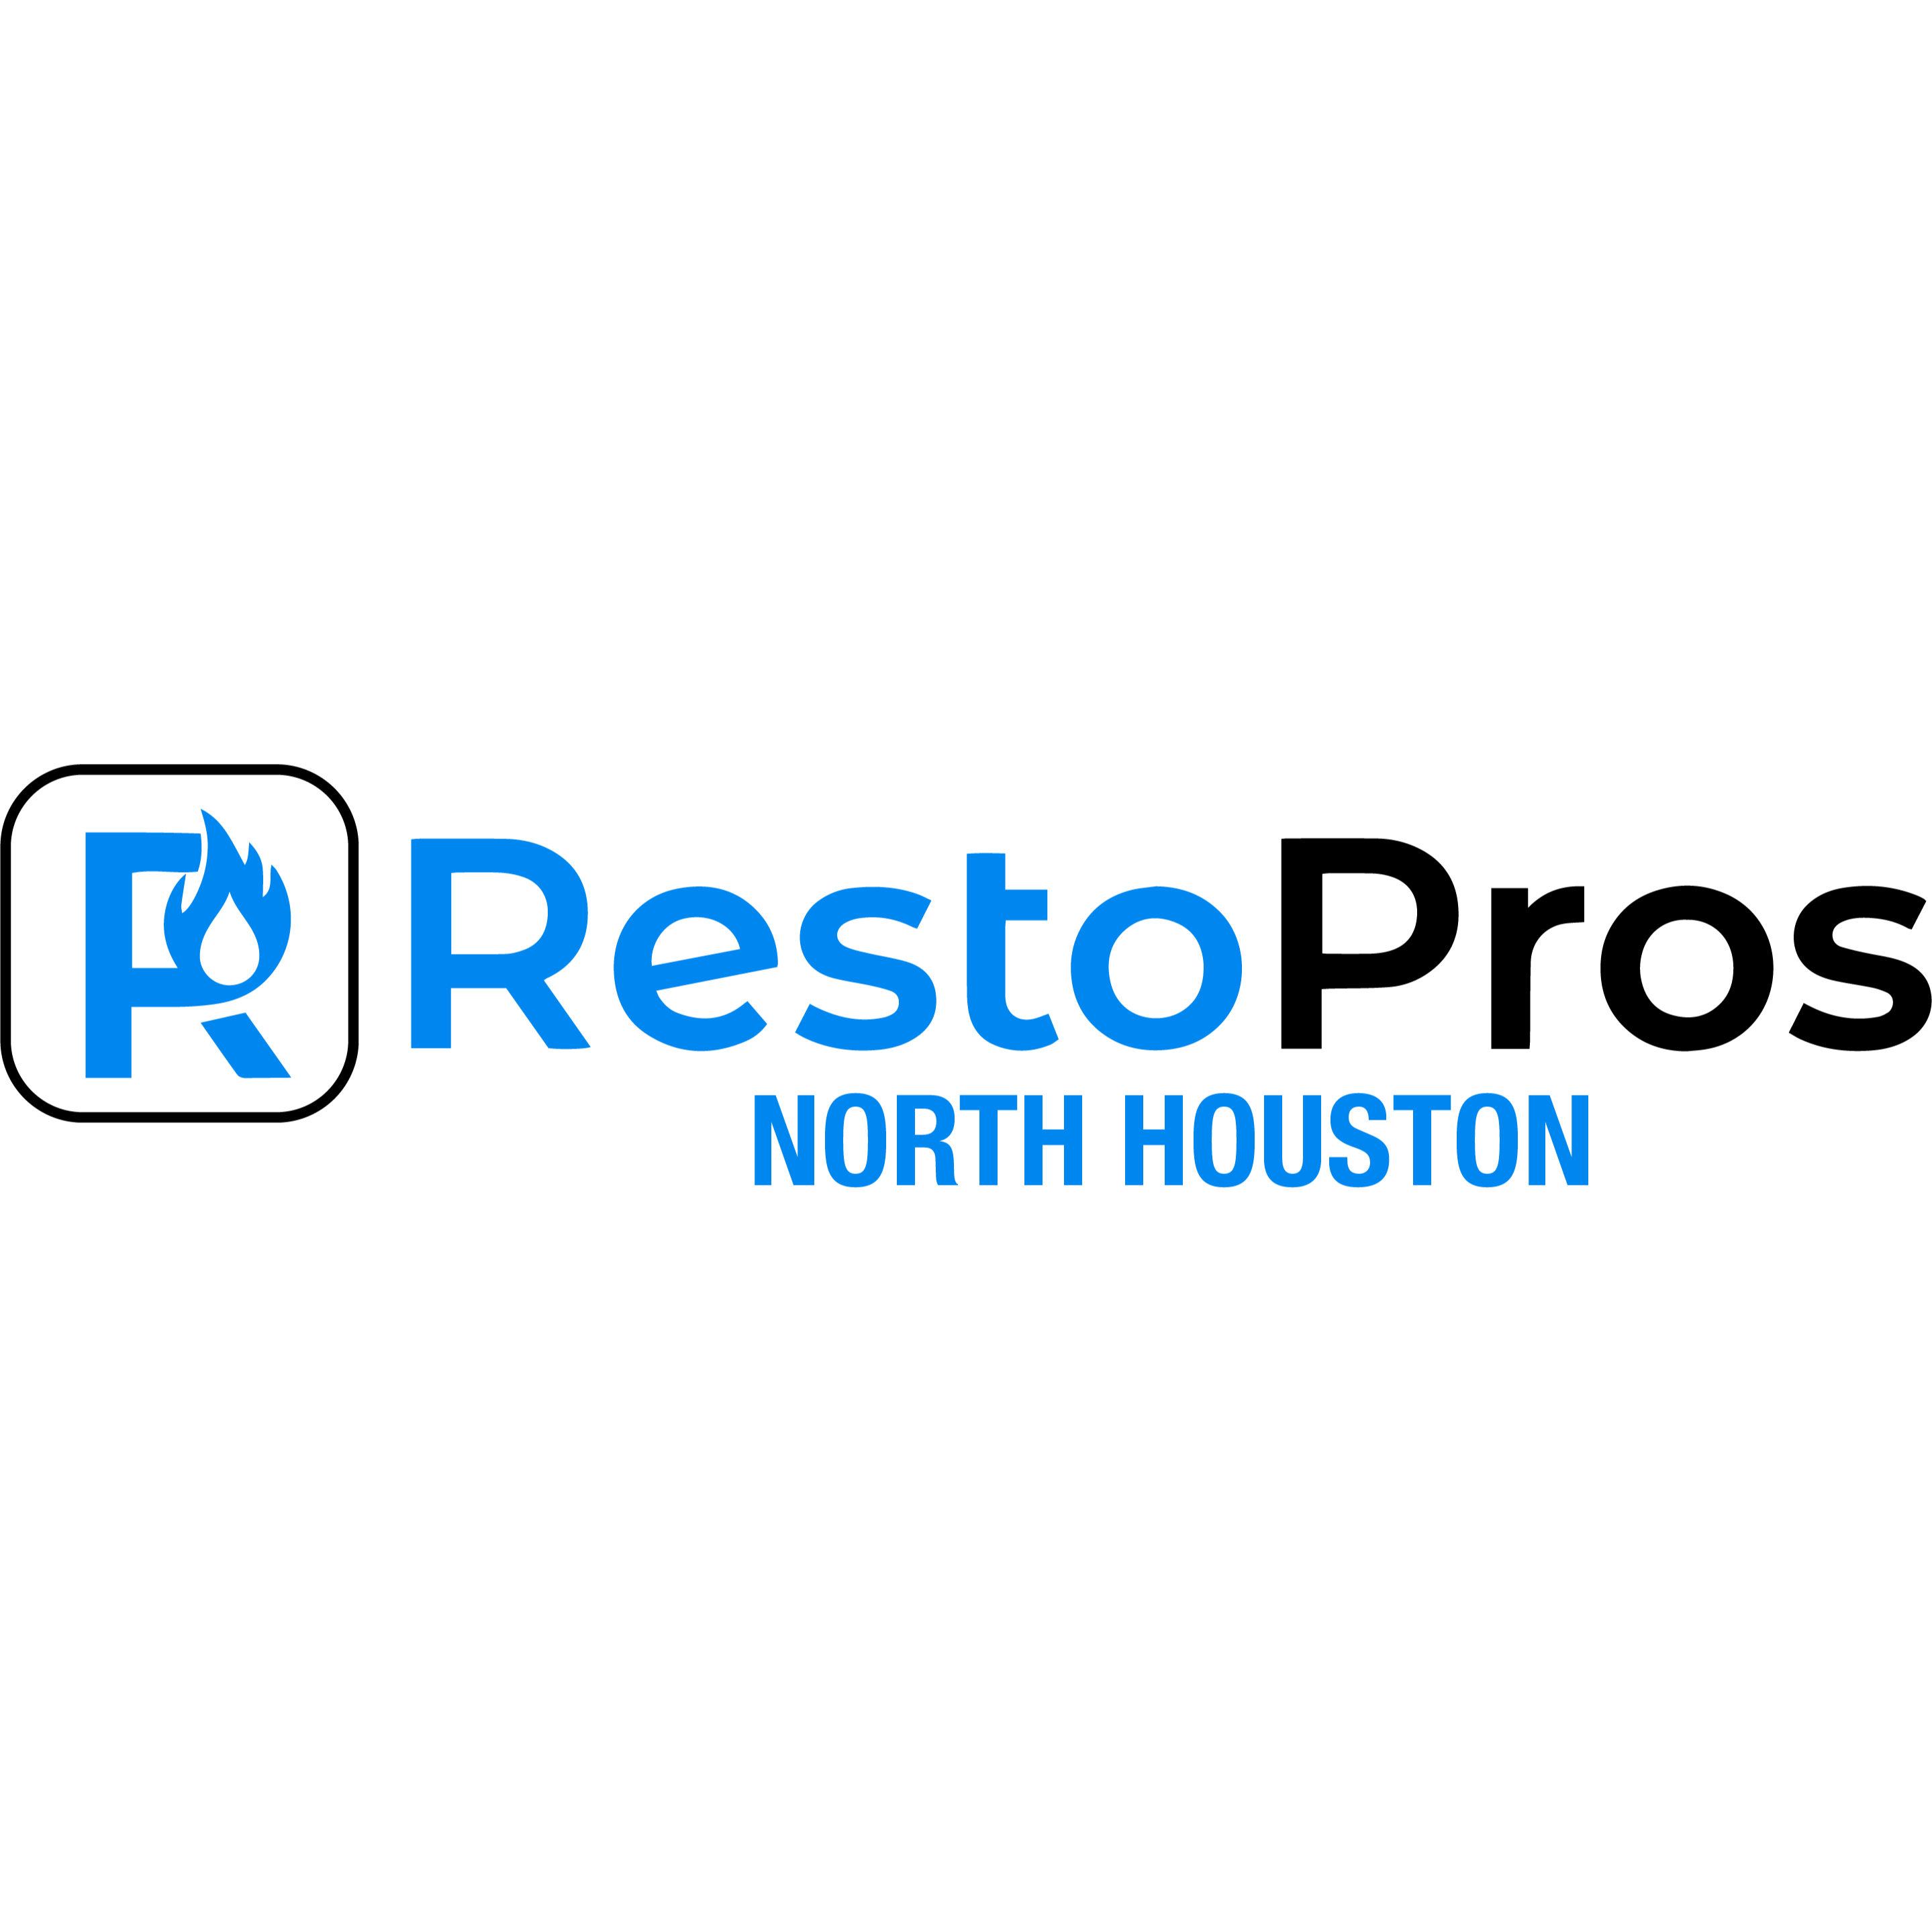 RestoPros of North Houston